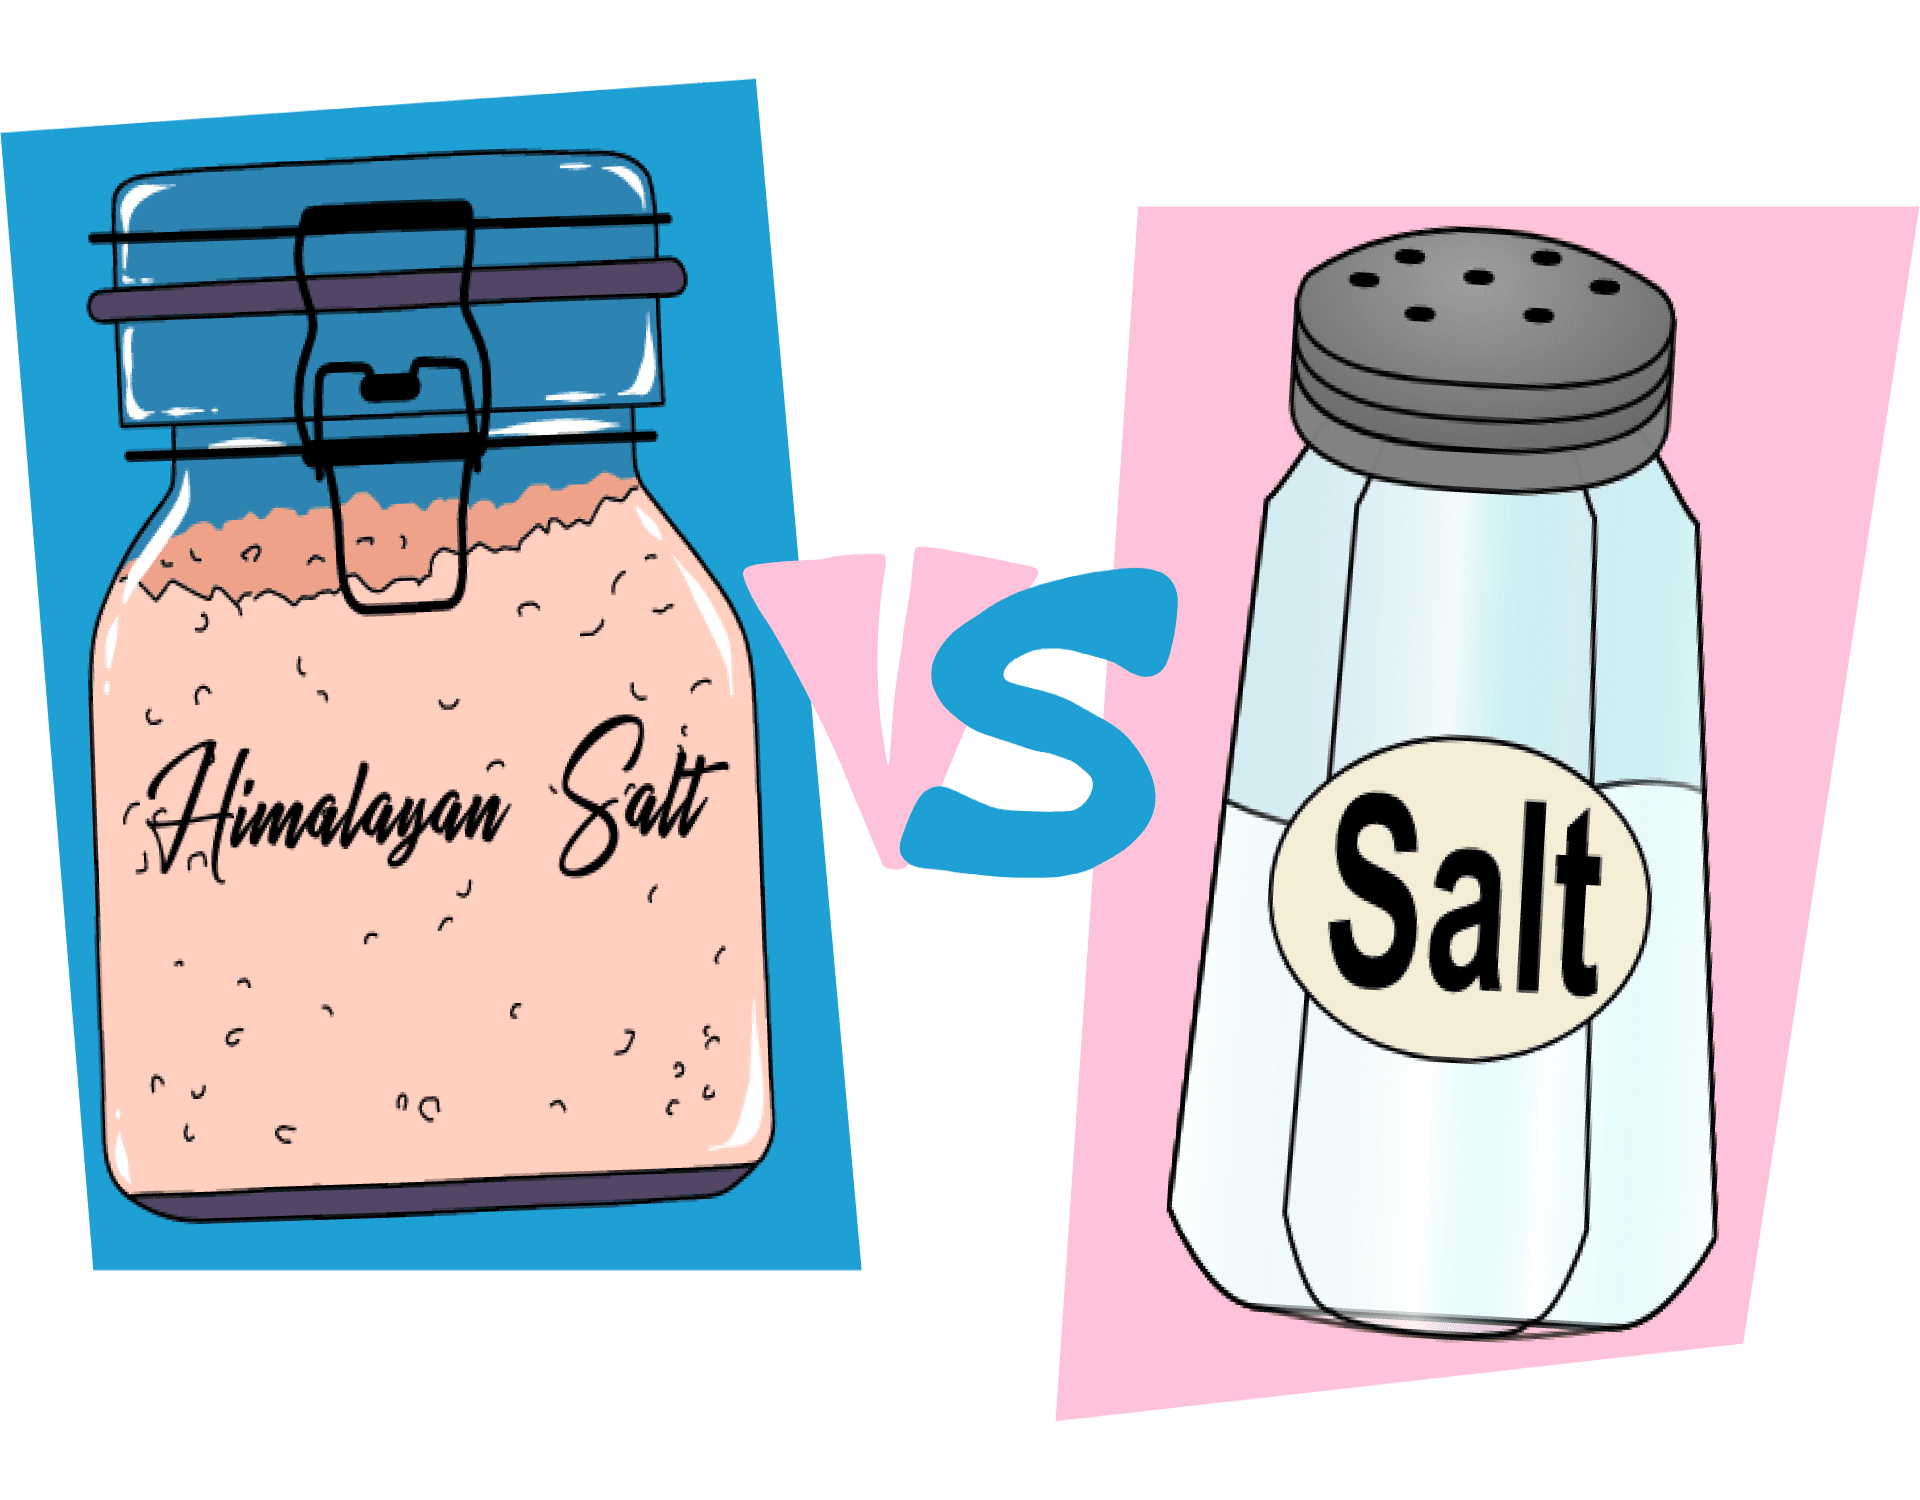 himalayan salt rock recipes, salt blocks for cooking, natural, salt stone, best himalayan salt block recipes, salmon, meat